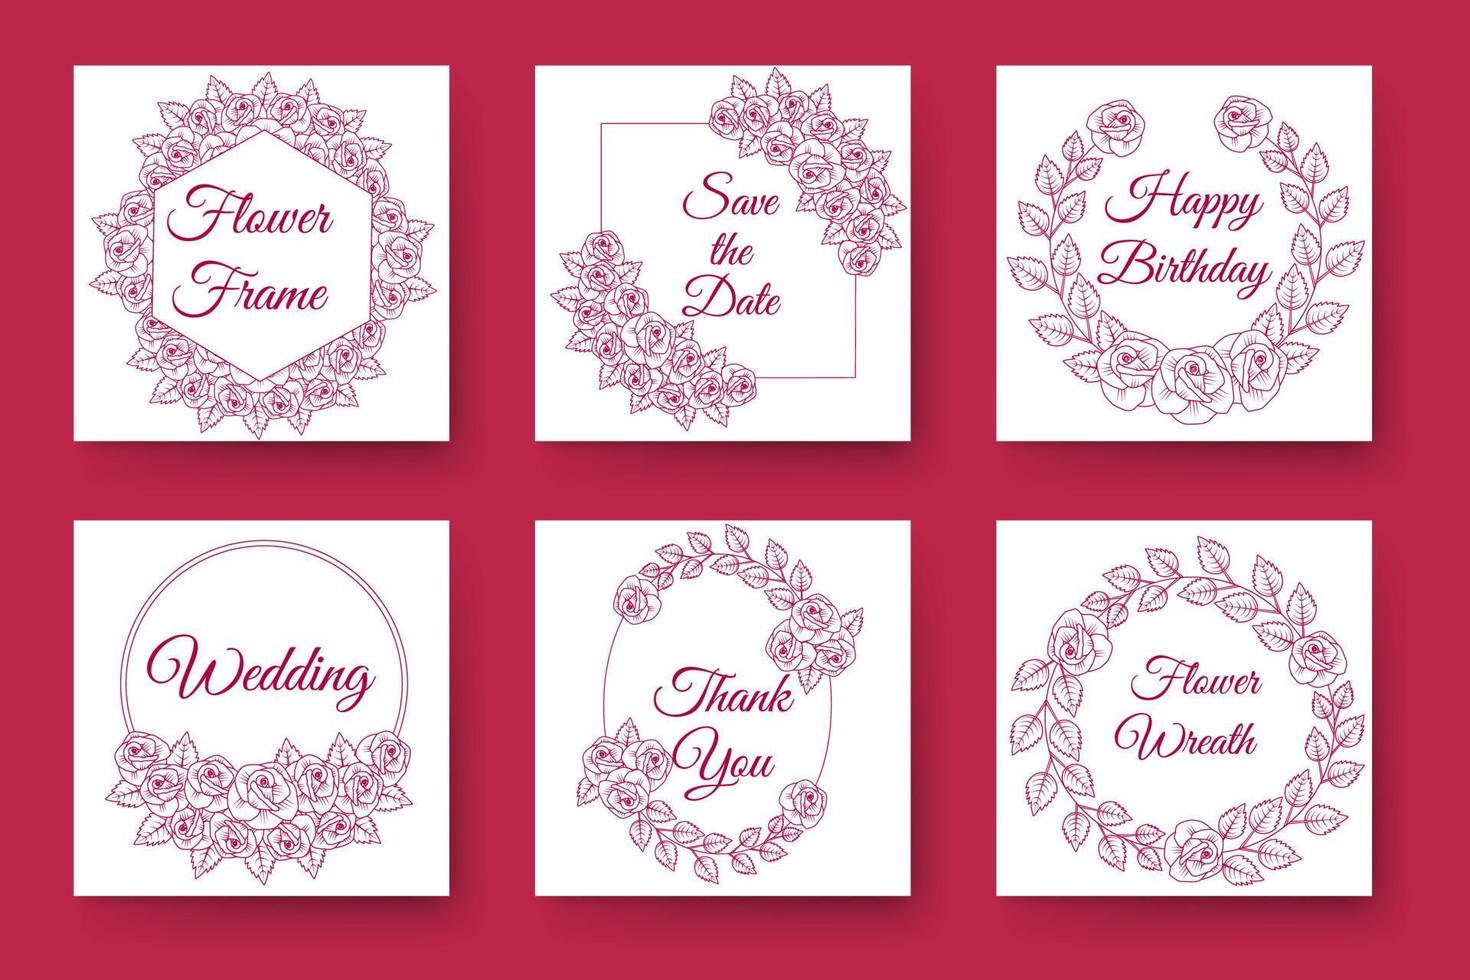 Blumen und Blumenkranz Hochzeitseinladung Rahmendesign mit eleganten viva magentafarbenen Hintergründen vektor